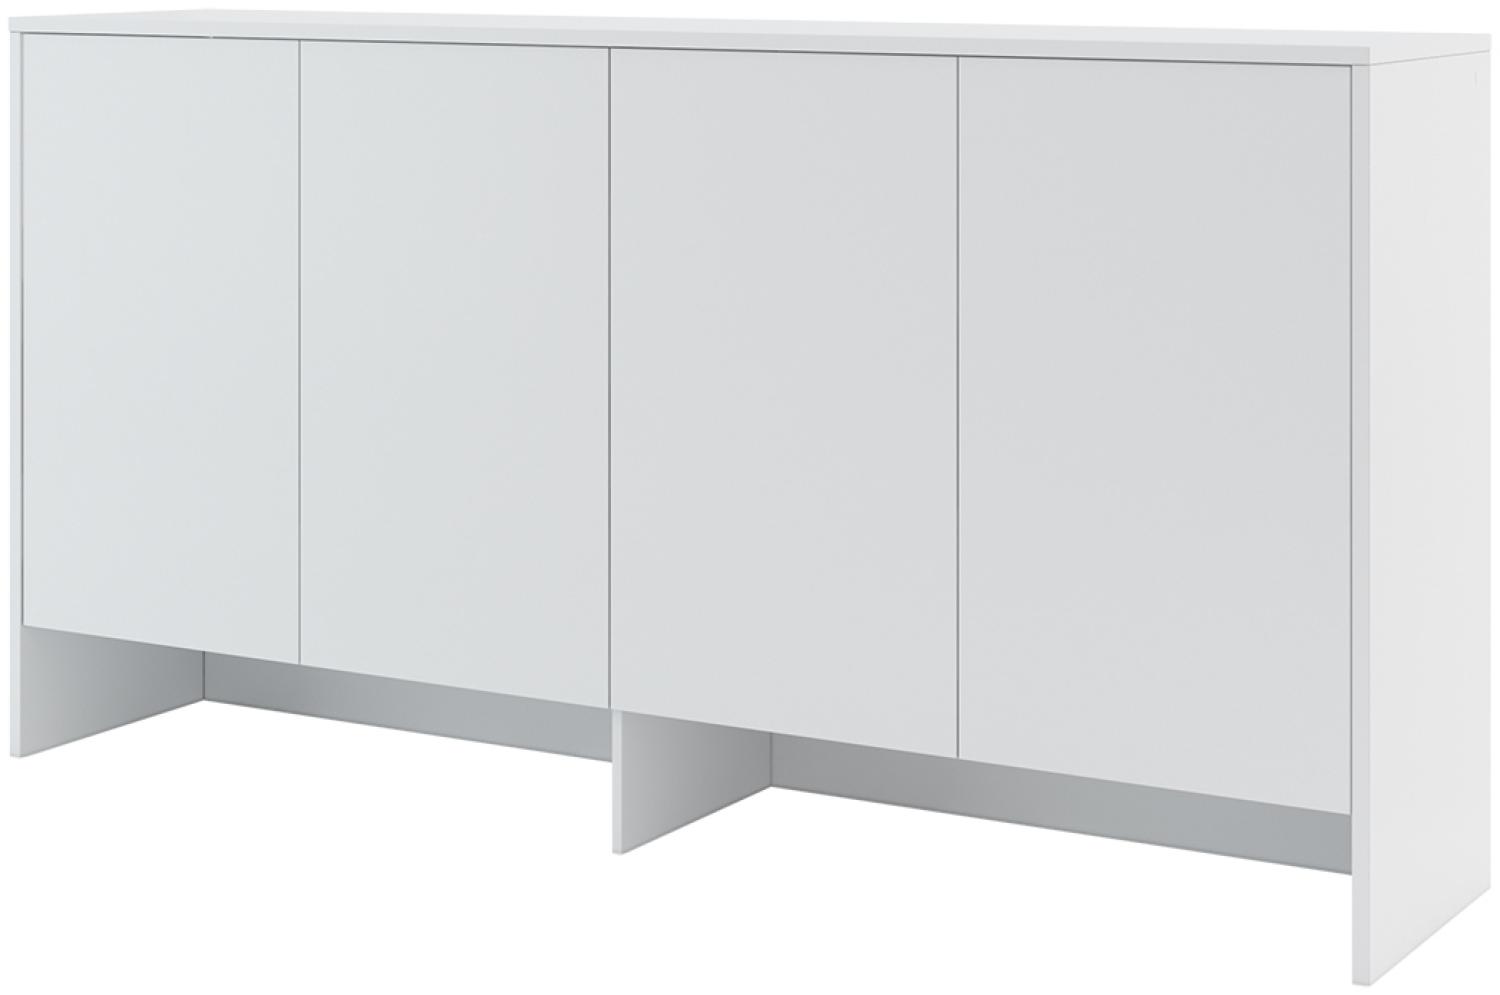 MEBLINI Hängeschrank für Horizontal Schrankbett Bed Concept - Wandschrank mit Ablagen und Fächern - Wandregal - BC-11 für 90x200 Horizontal - Weiß Matt Bild 1